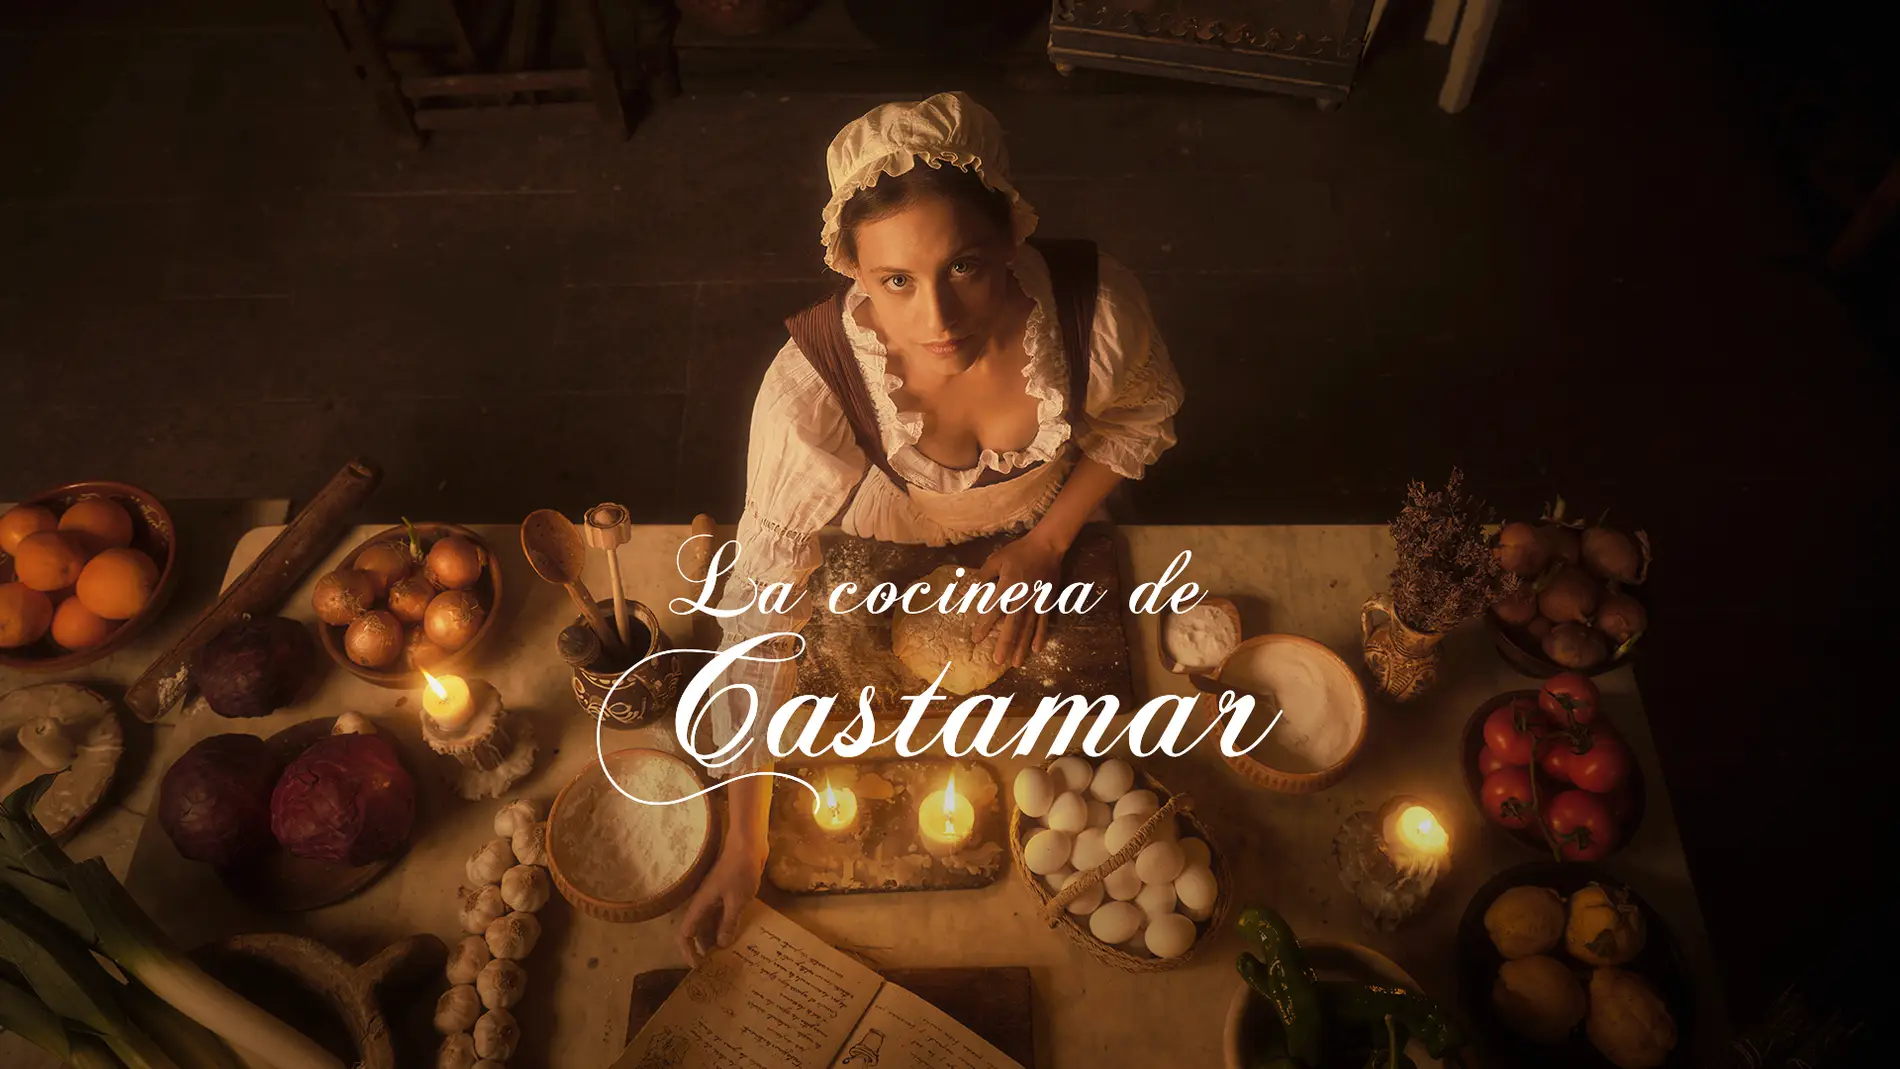 ATRESplayer PREMIUM estrenará en exclusiva 'La cocinera de Castamar' el 21 de febrero